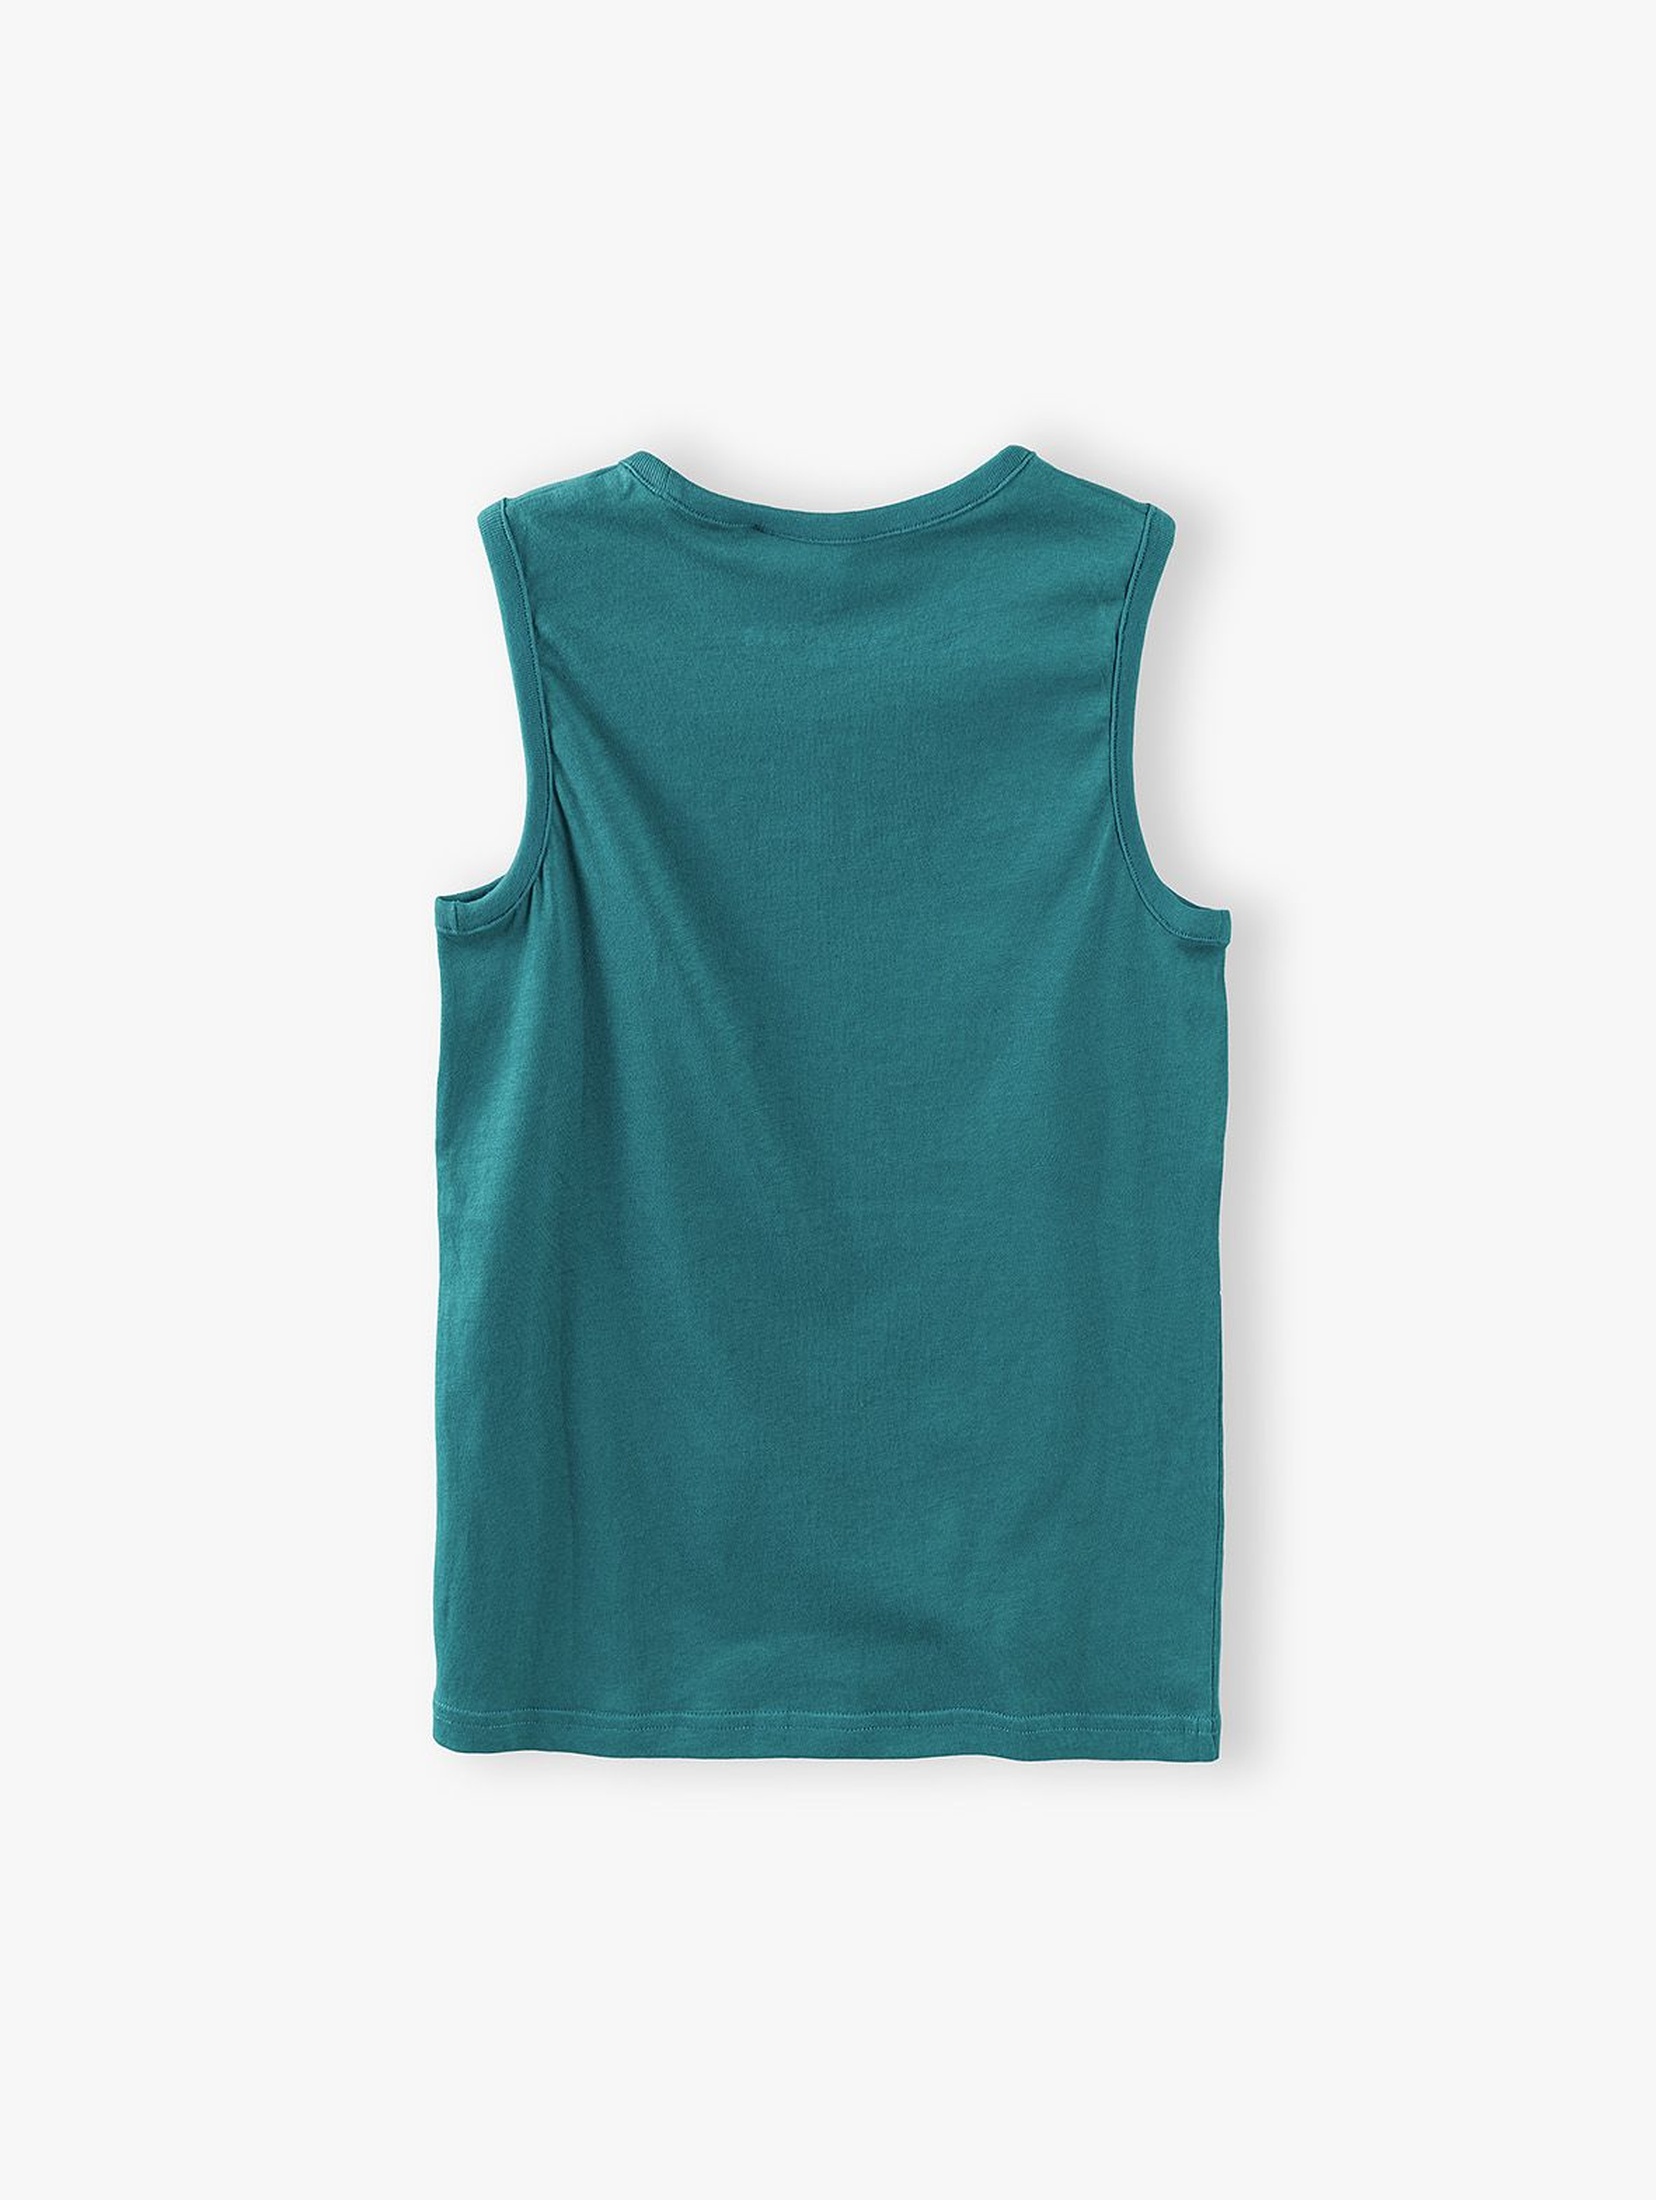 T-shirt chłopięcy w kolorze ciemnej zieleni- Chillaułcik